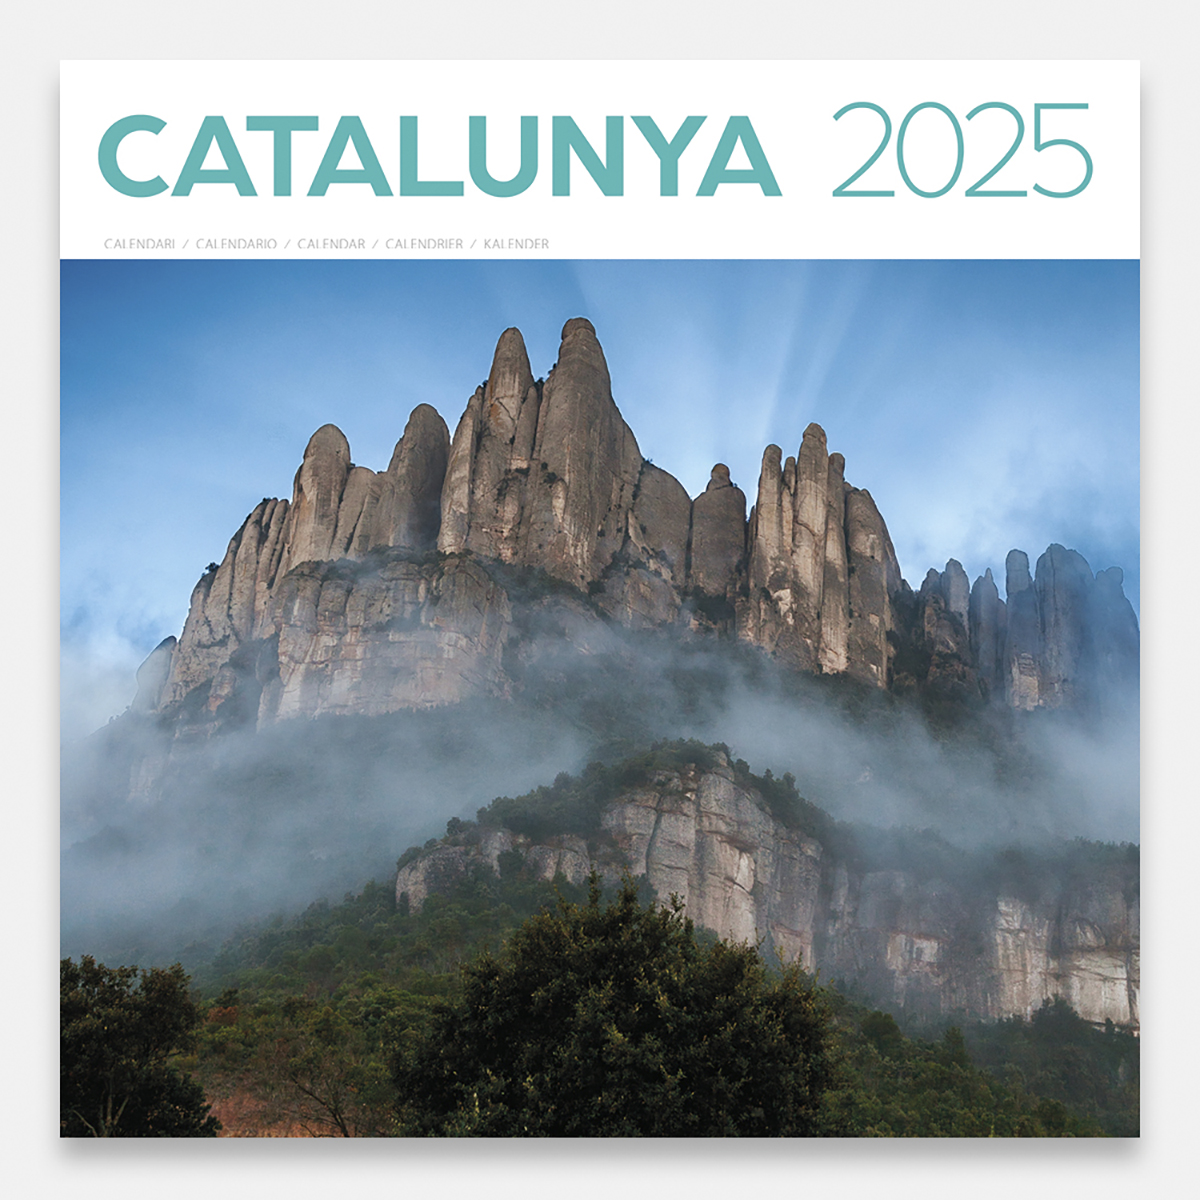 Calendari 2025 Catalunya 25catg calendario pared 2025 catalunya cataluna catalonia